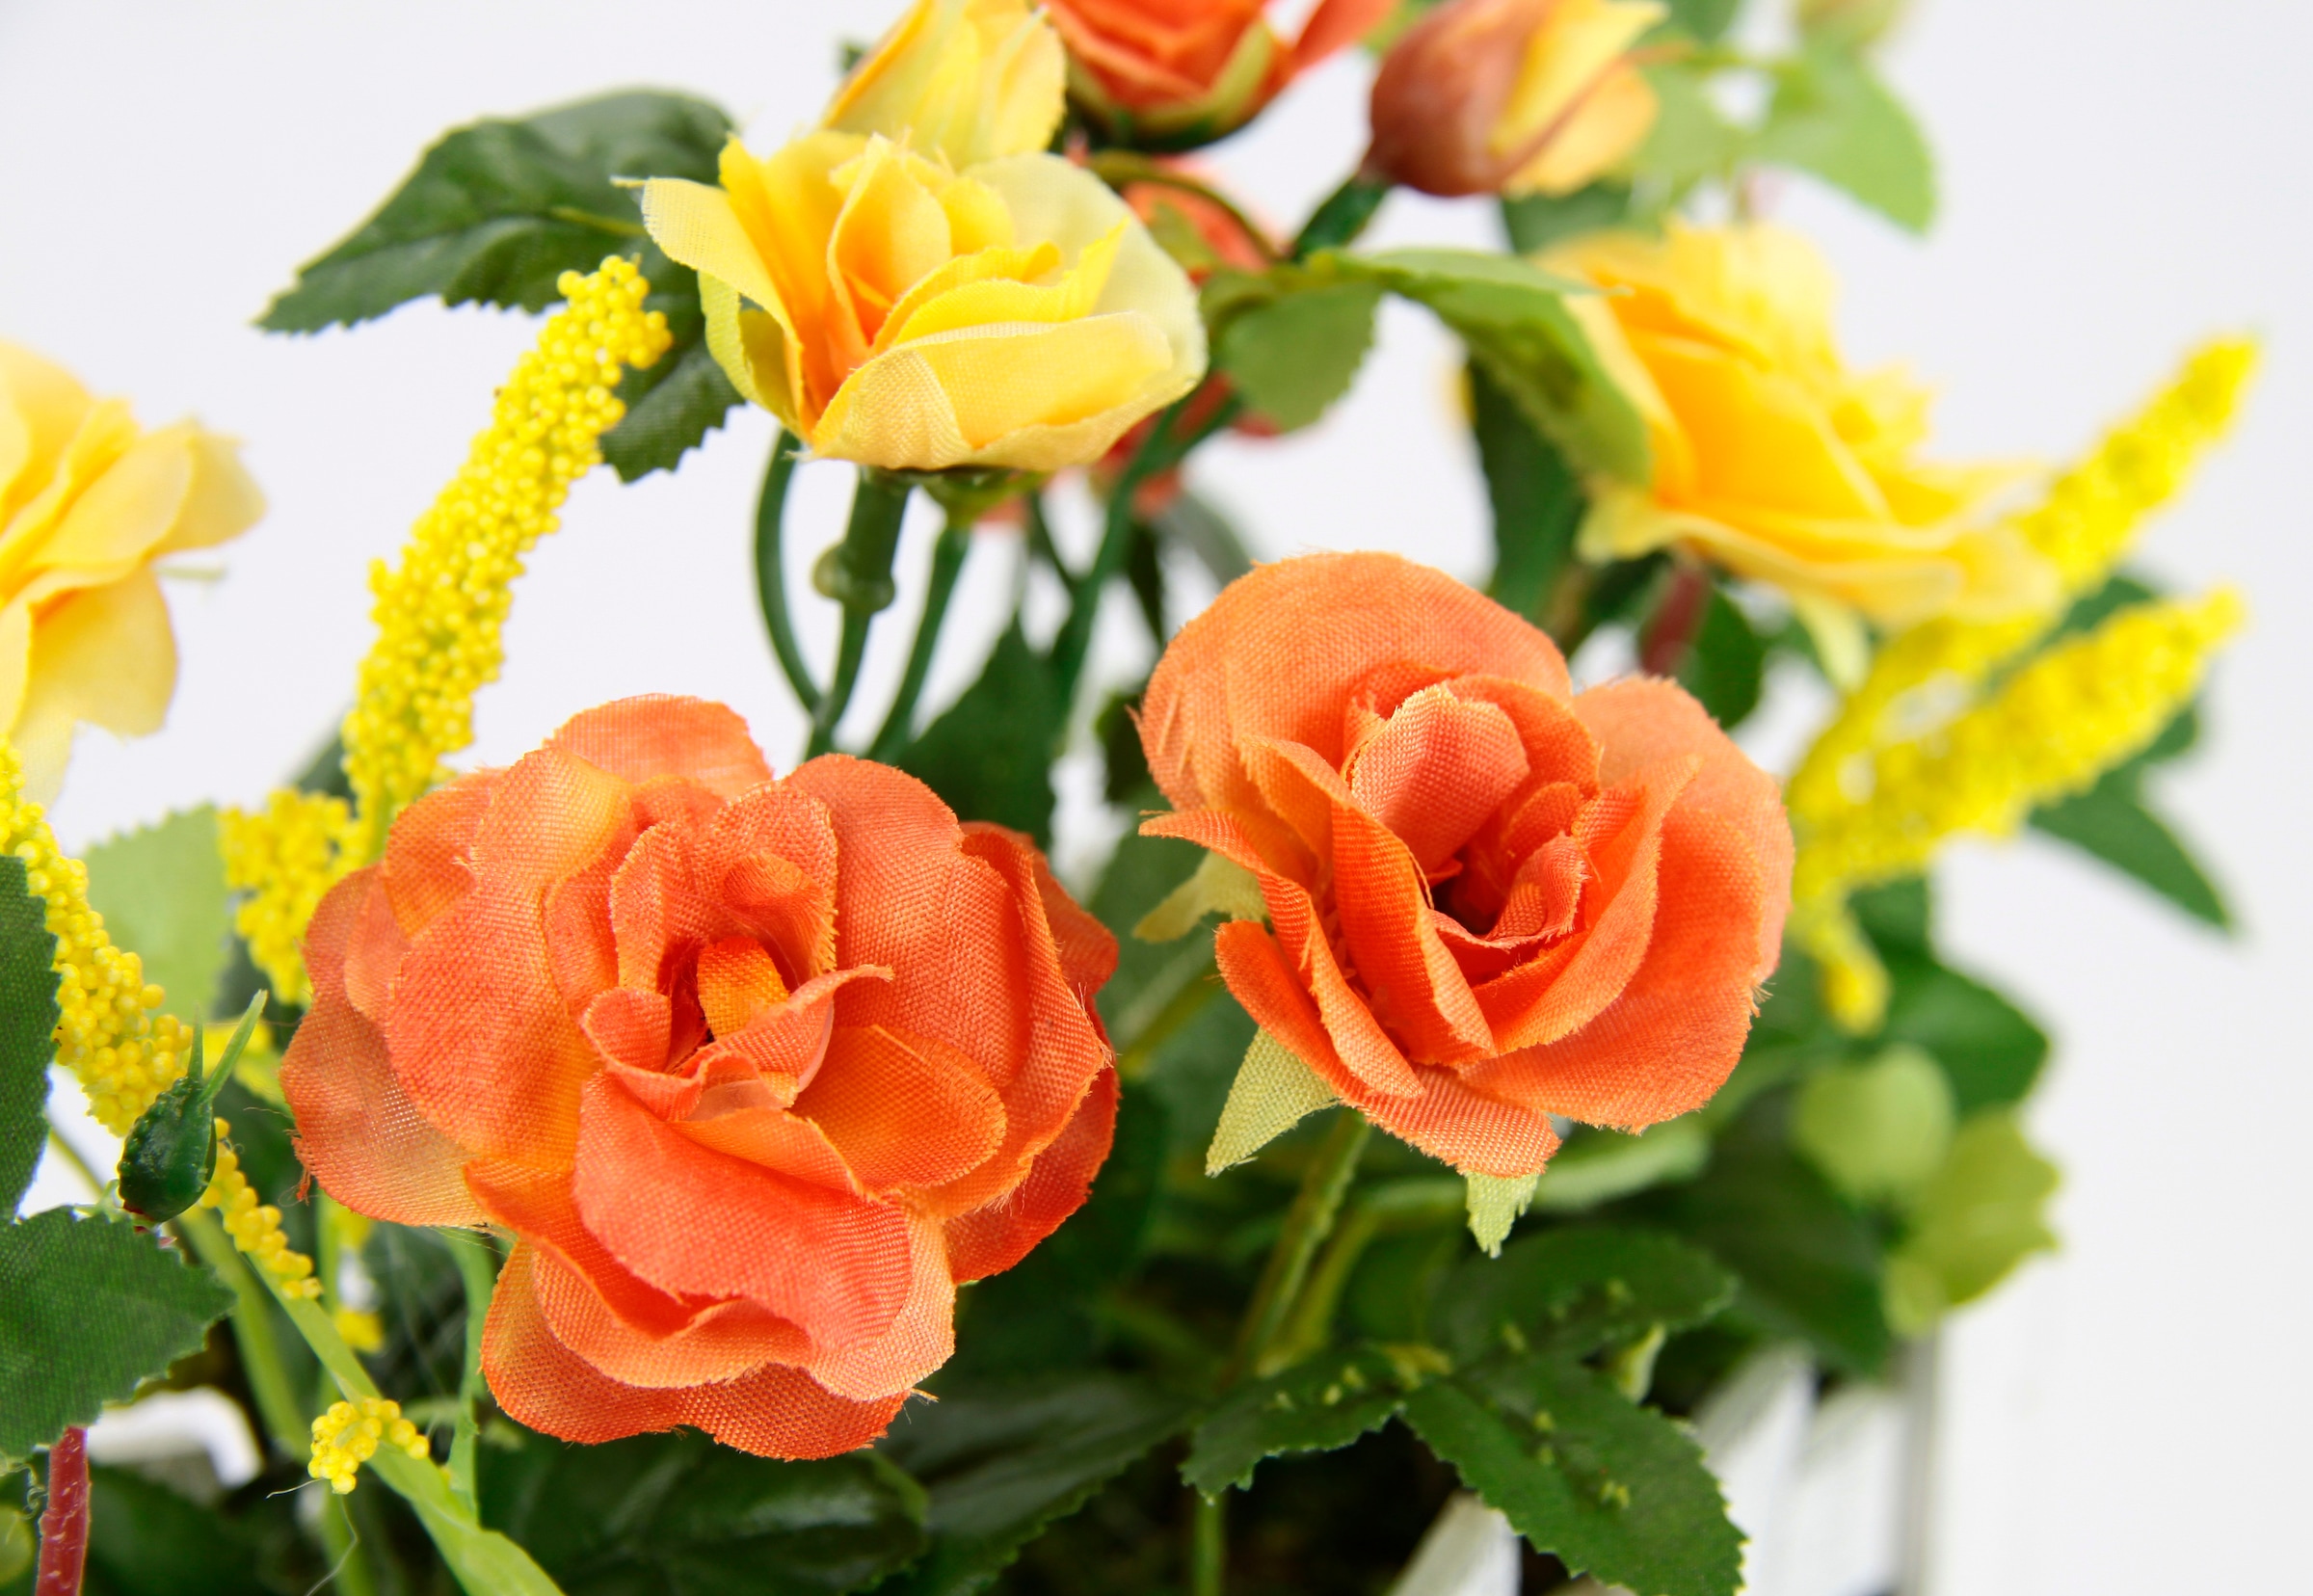 I.GE.A. Kunstblume »Wildrosen im Zaun«, Künstliche Blumen Seidenblumen  Rosenblätter Rosenbusch bestellen bei OTTO